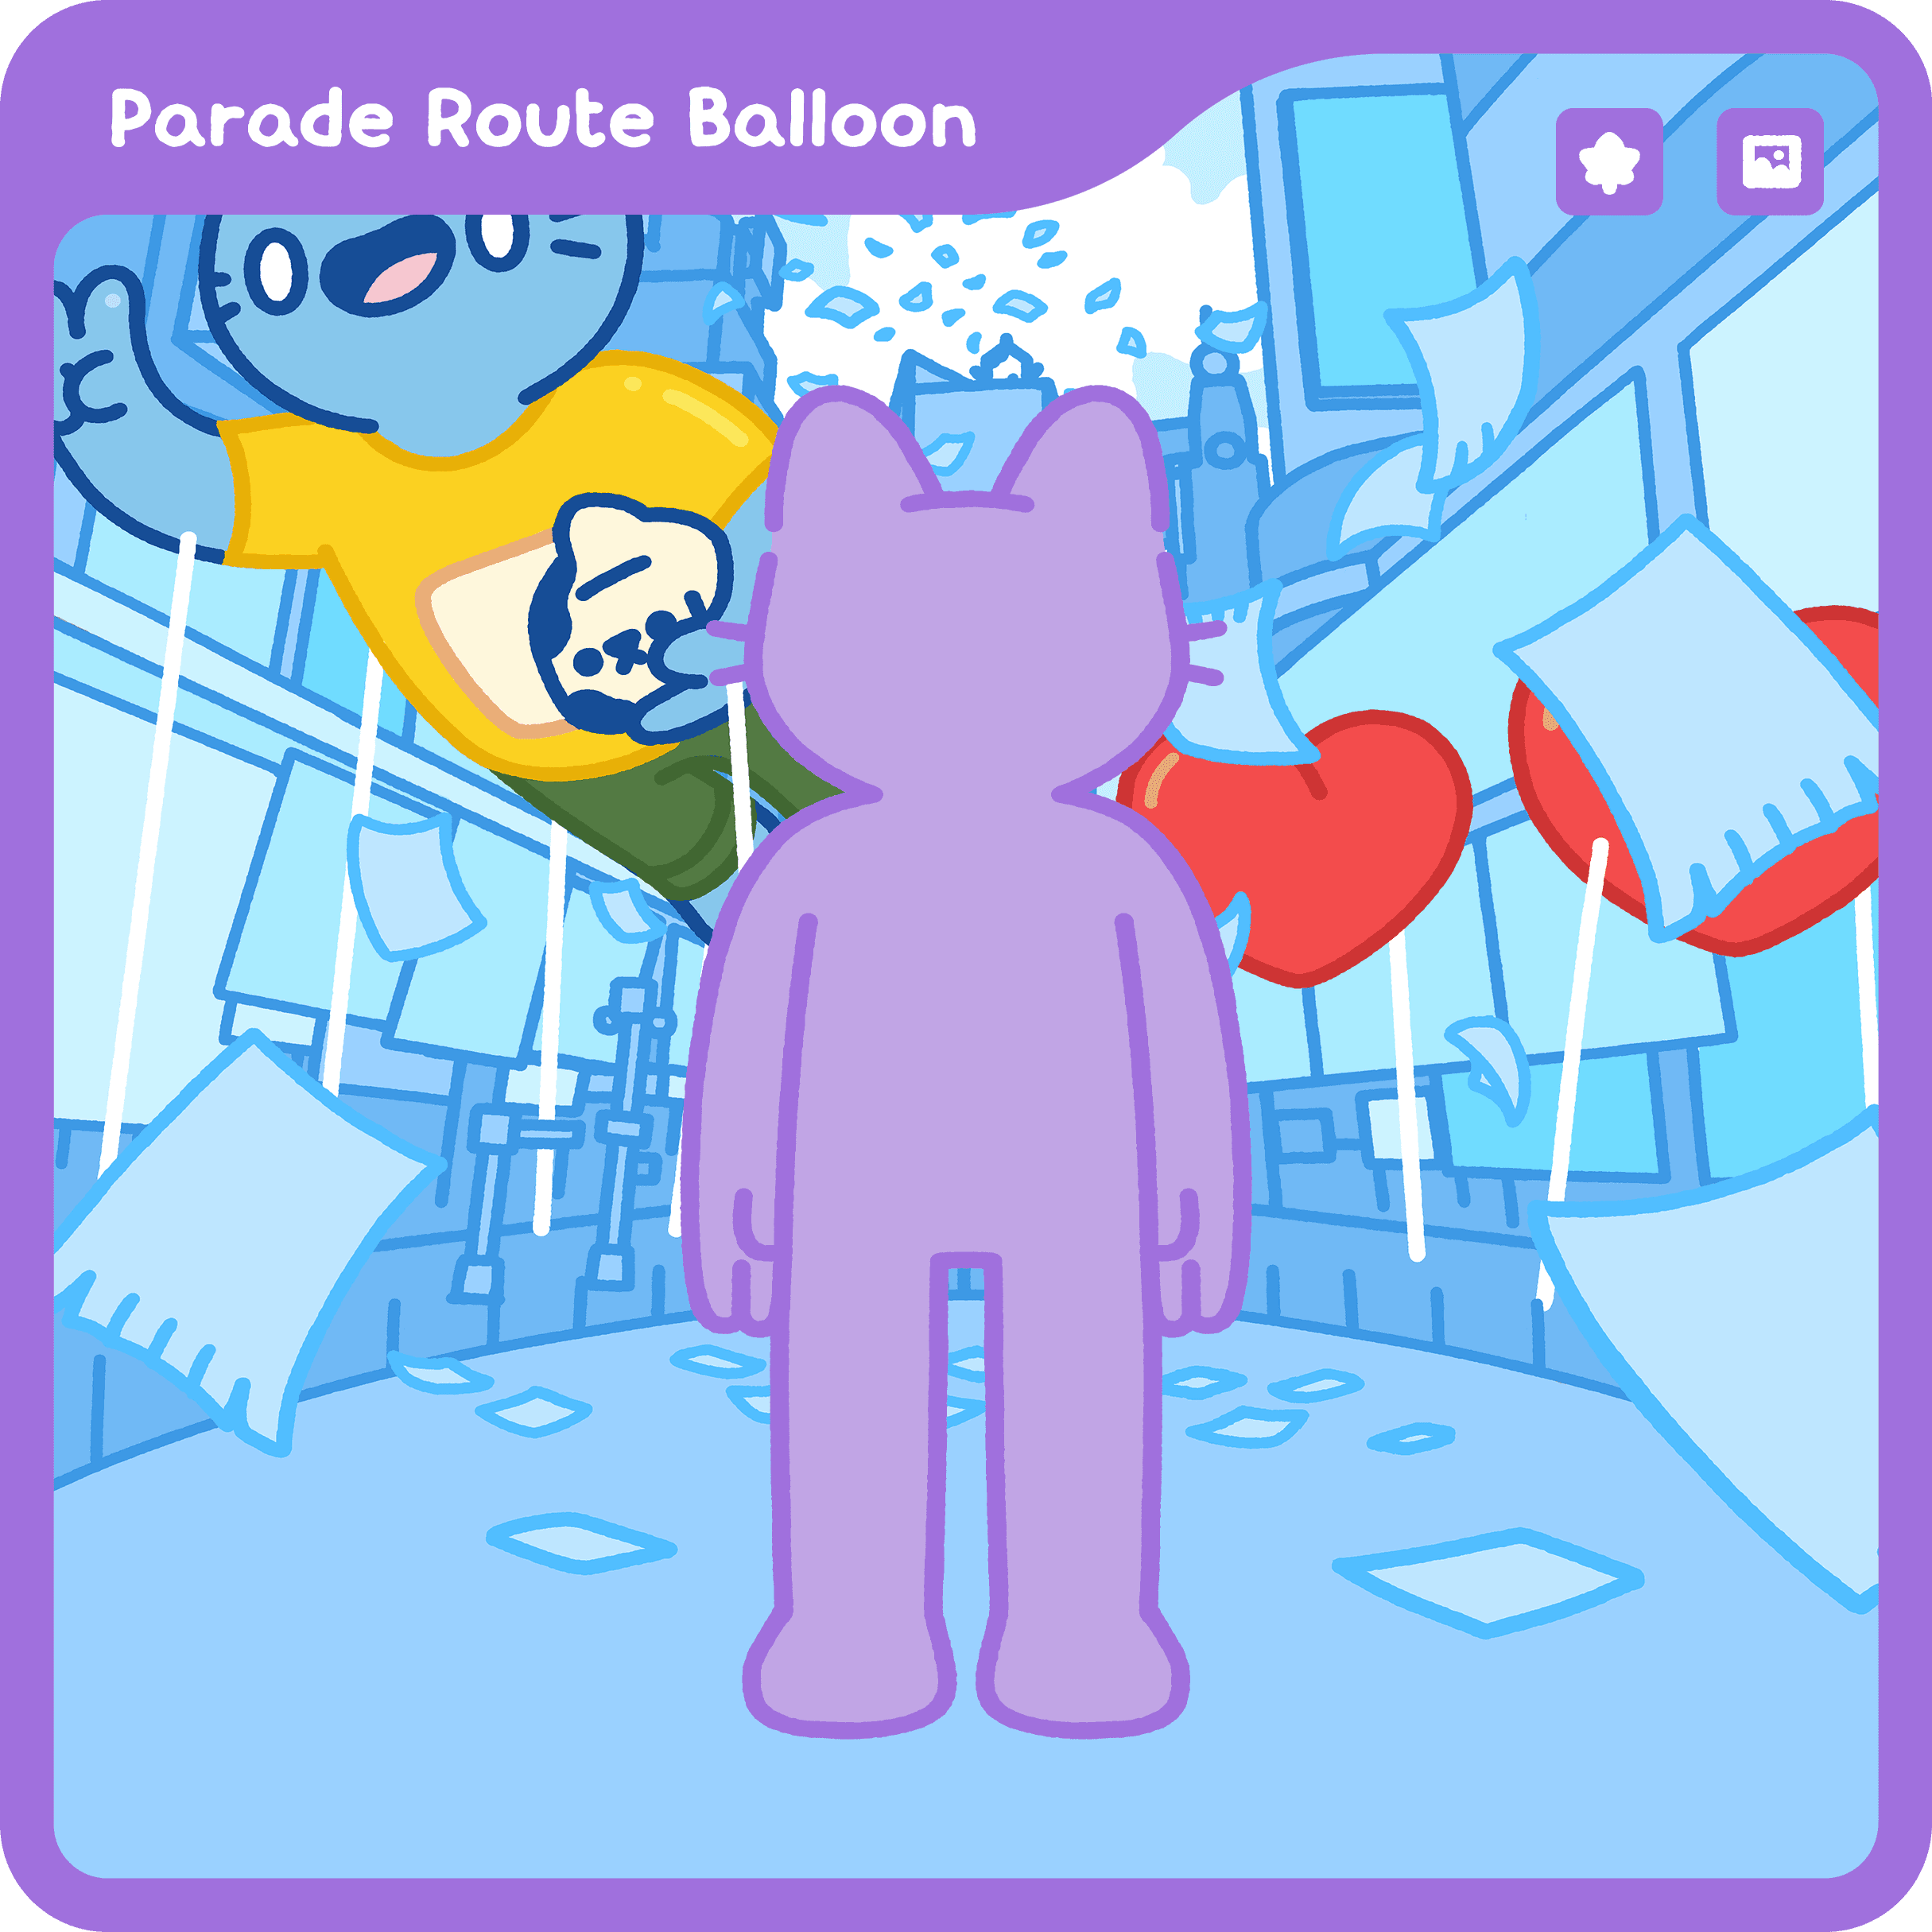 Parade Route Balloon